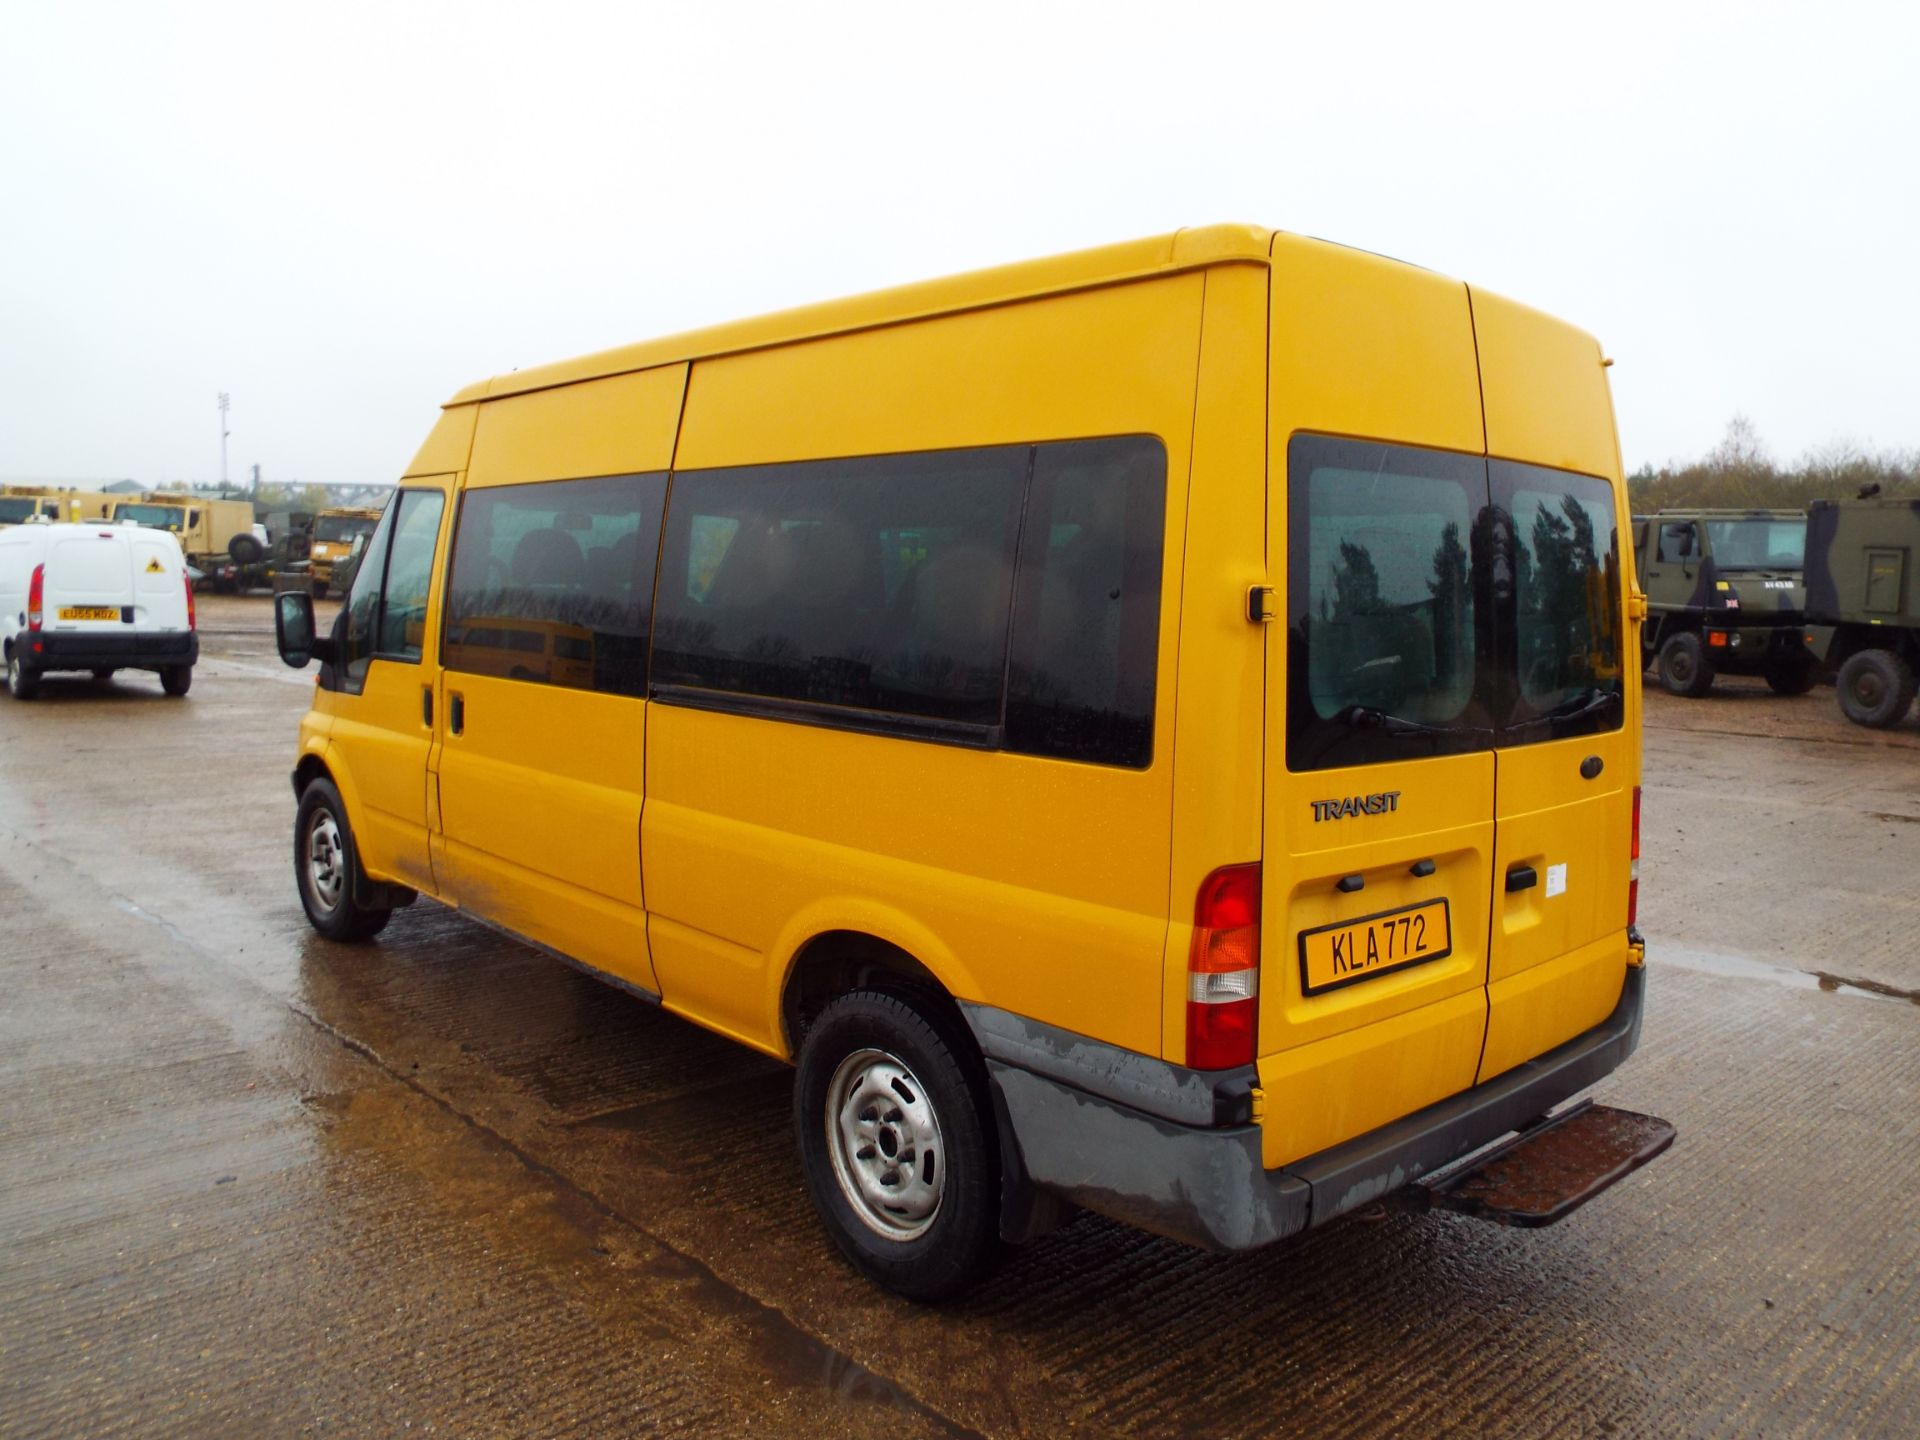 Ford Transit 11 Seat Minibus - Image 5 of 21